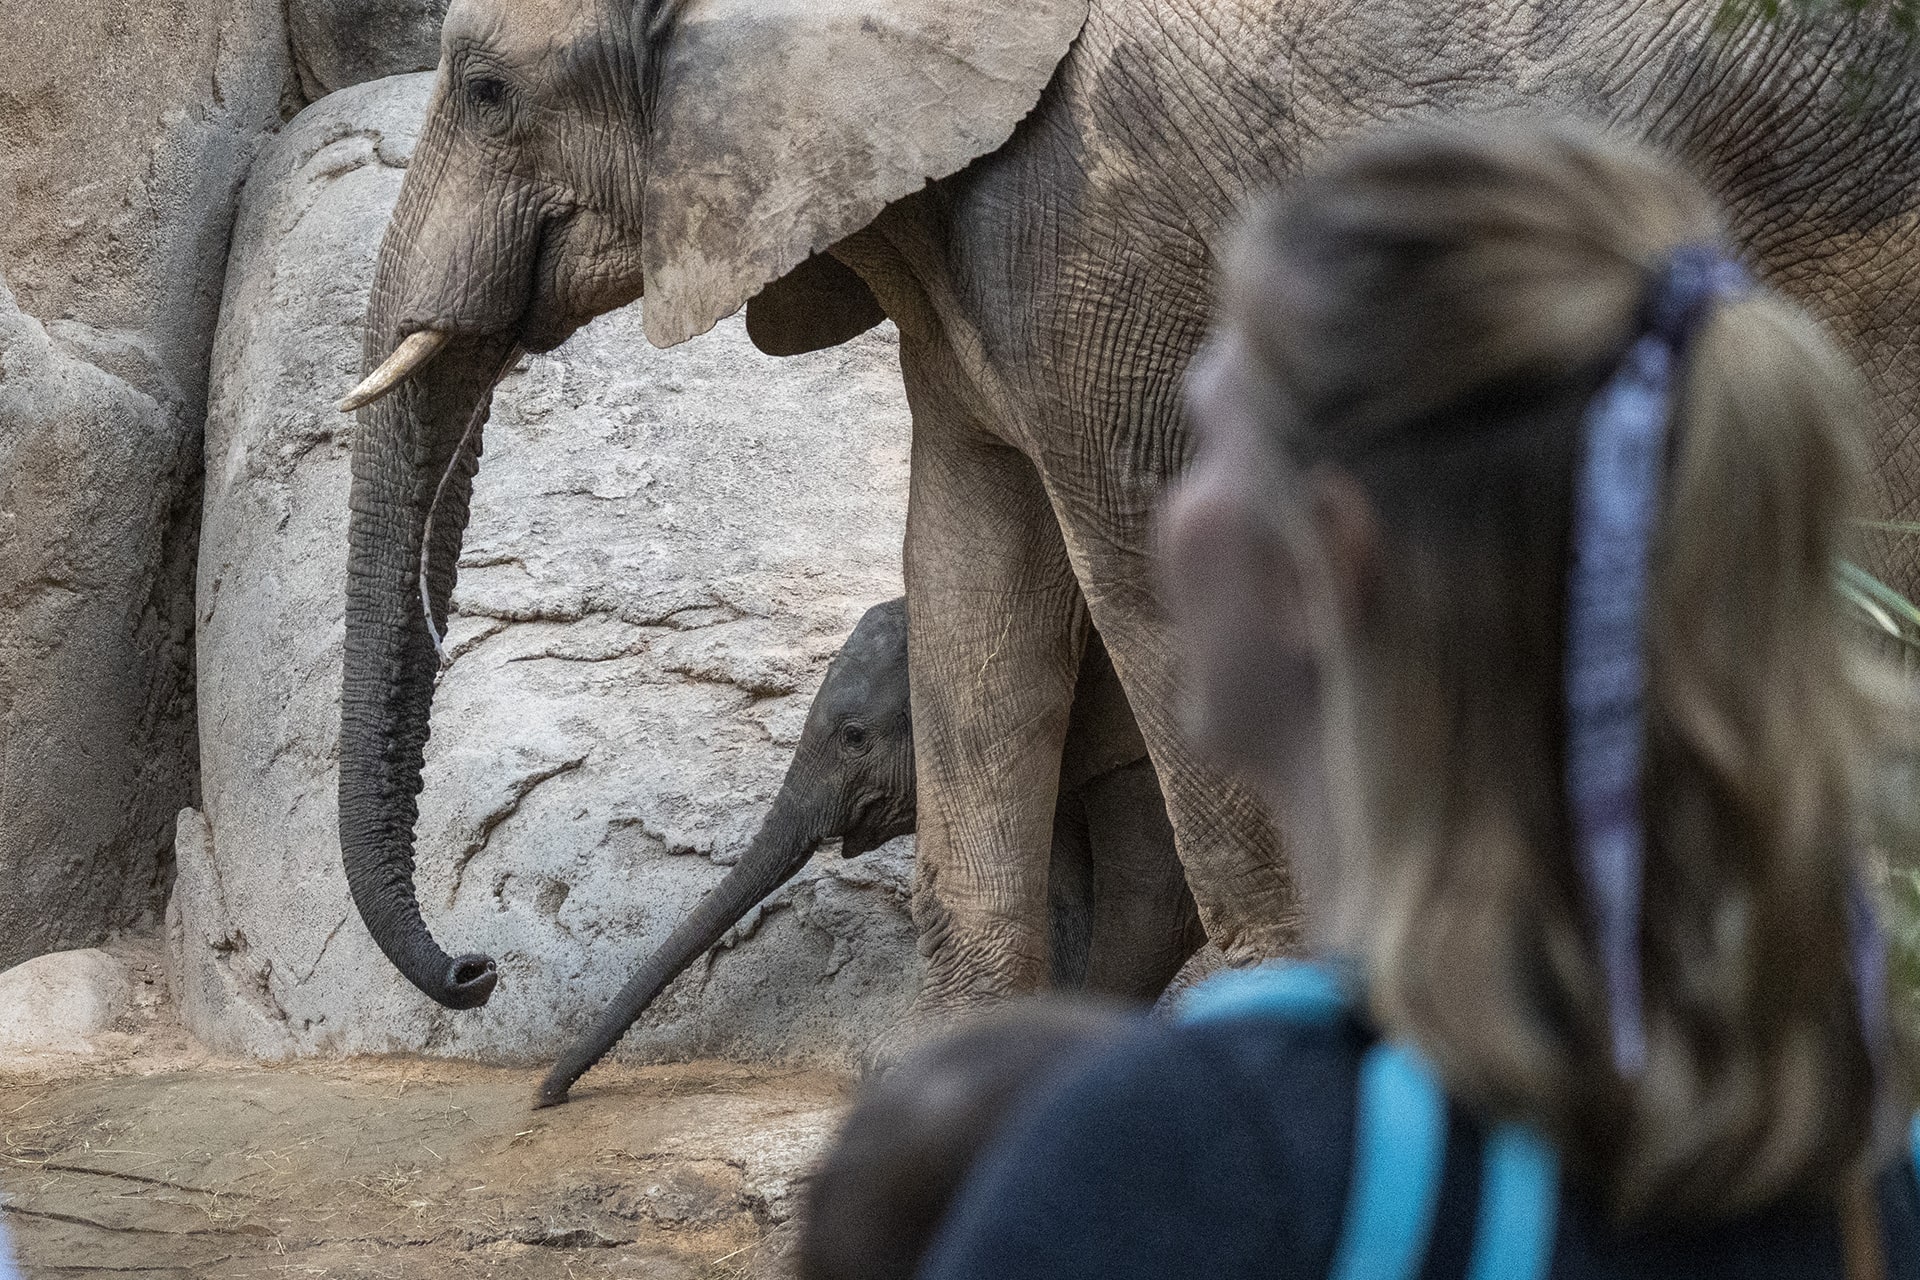 Educación Ambiental en BIOPARC Valencia - Visitantes observando a una cría de elefante junto a su madre